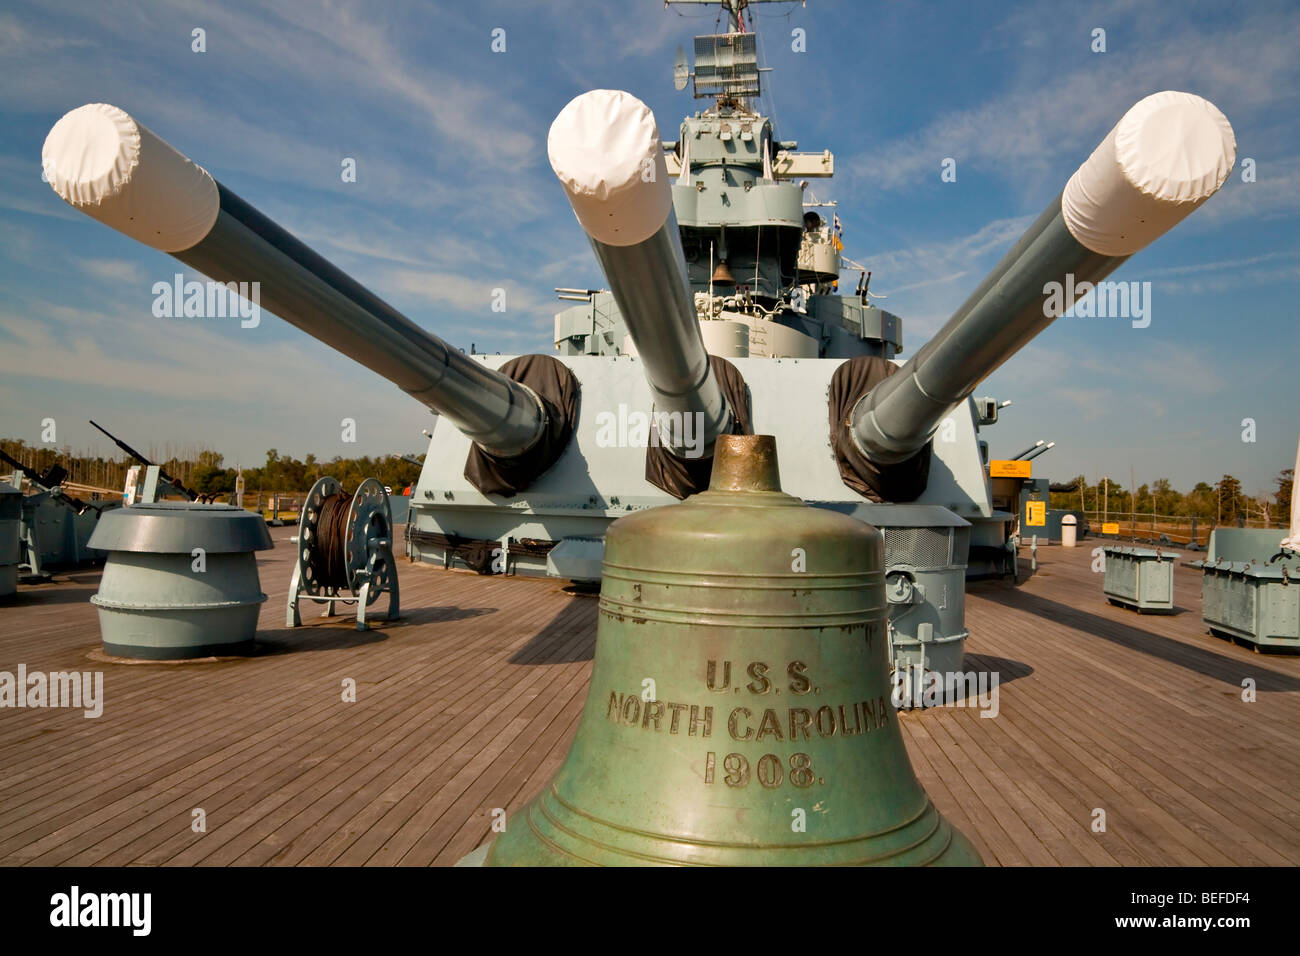 La cloche d'un autre navire de guerre USS North Carolina sur le pont du navire de guerre du même nom Banque D'Images